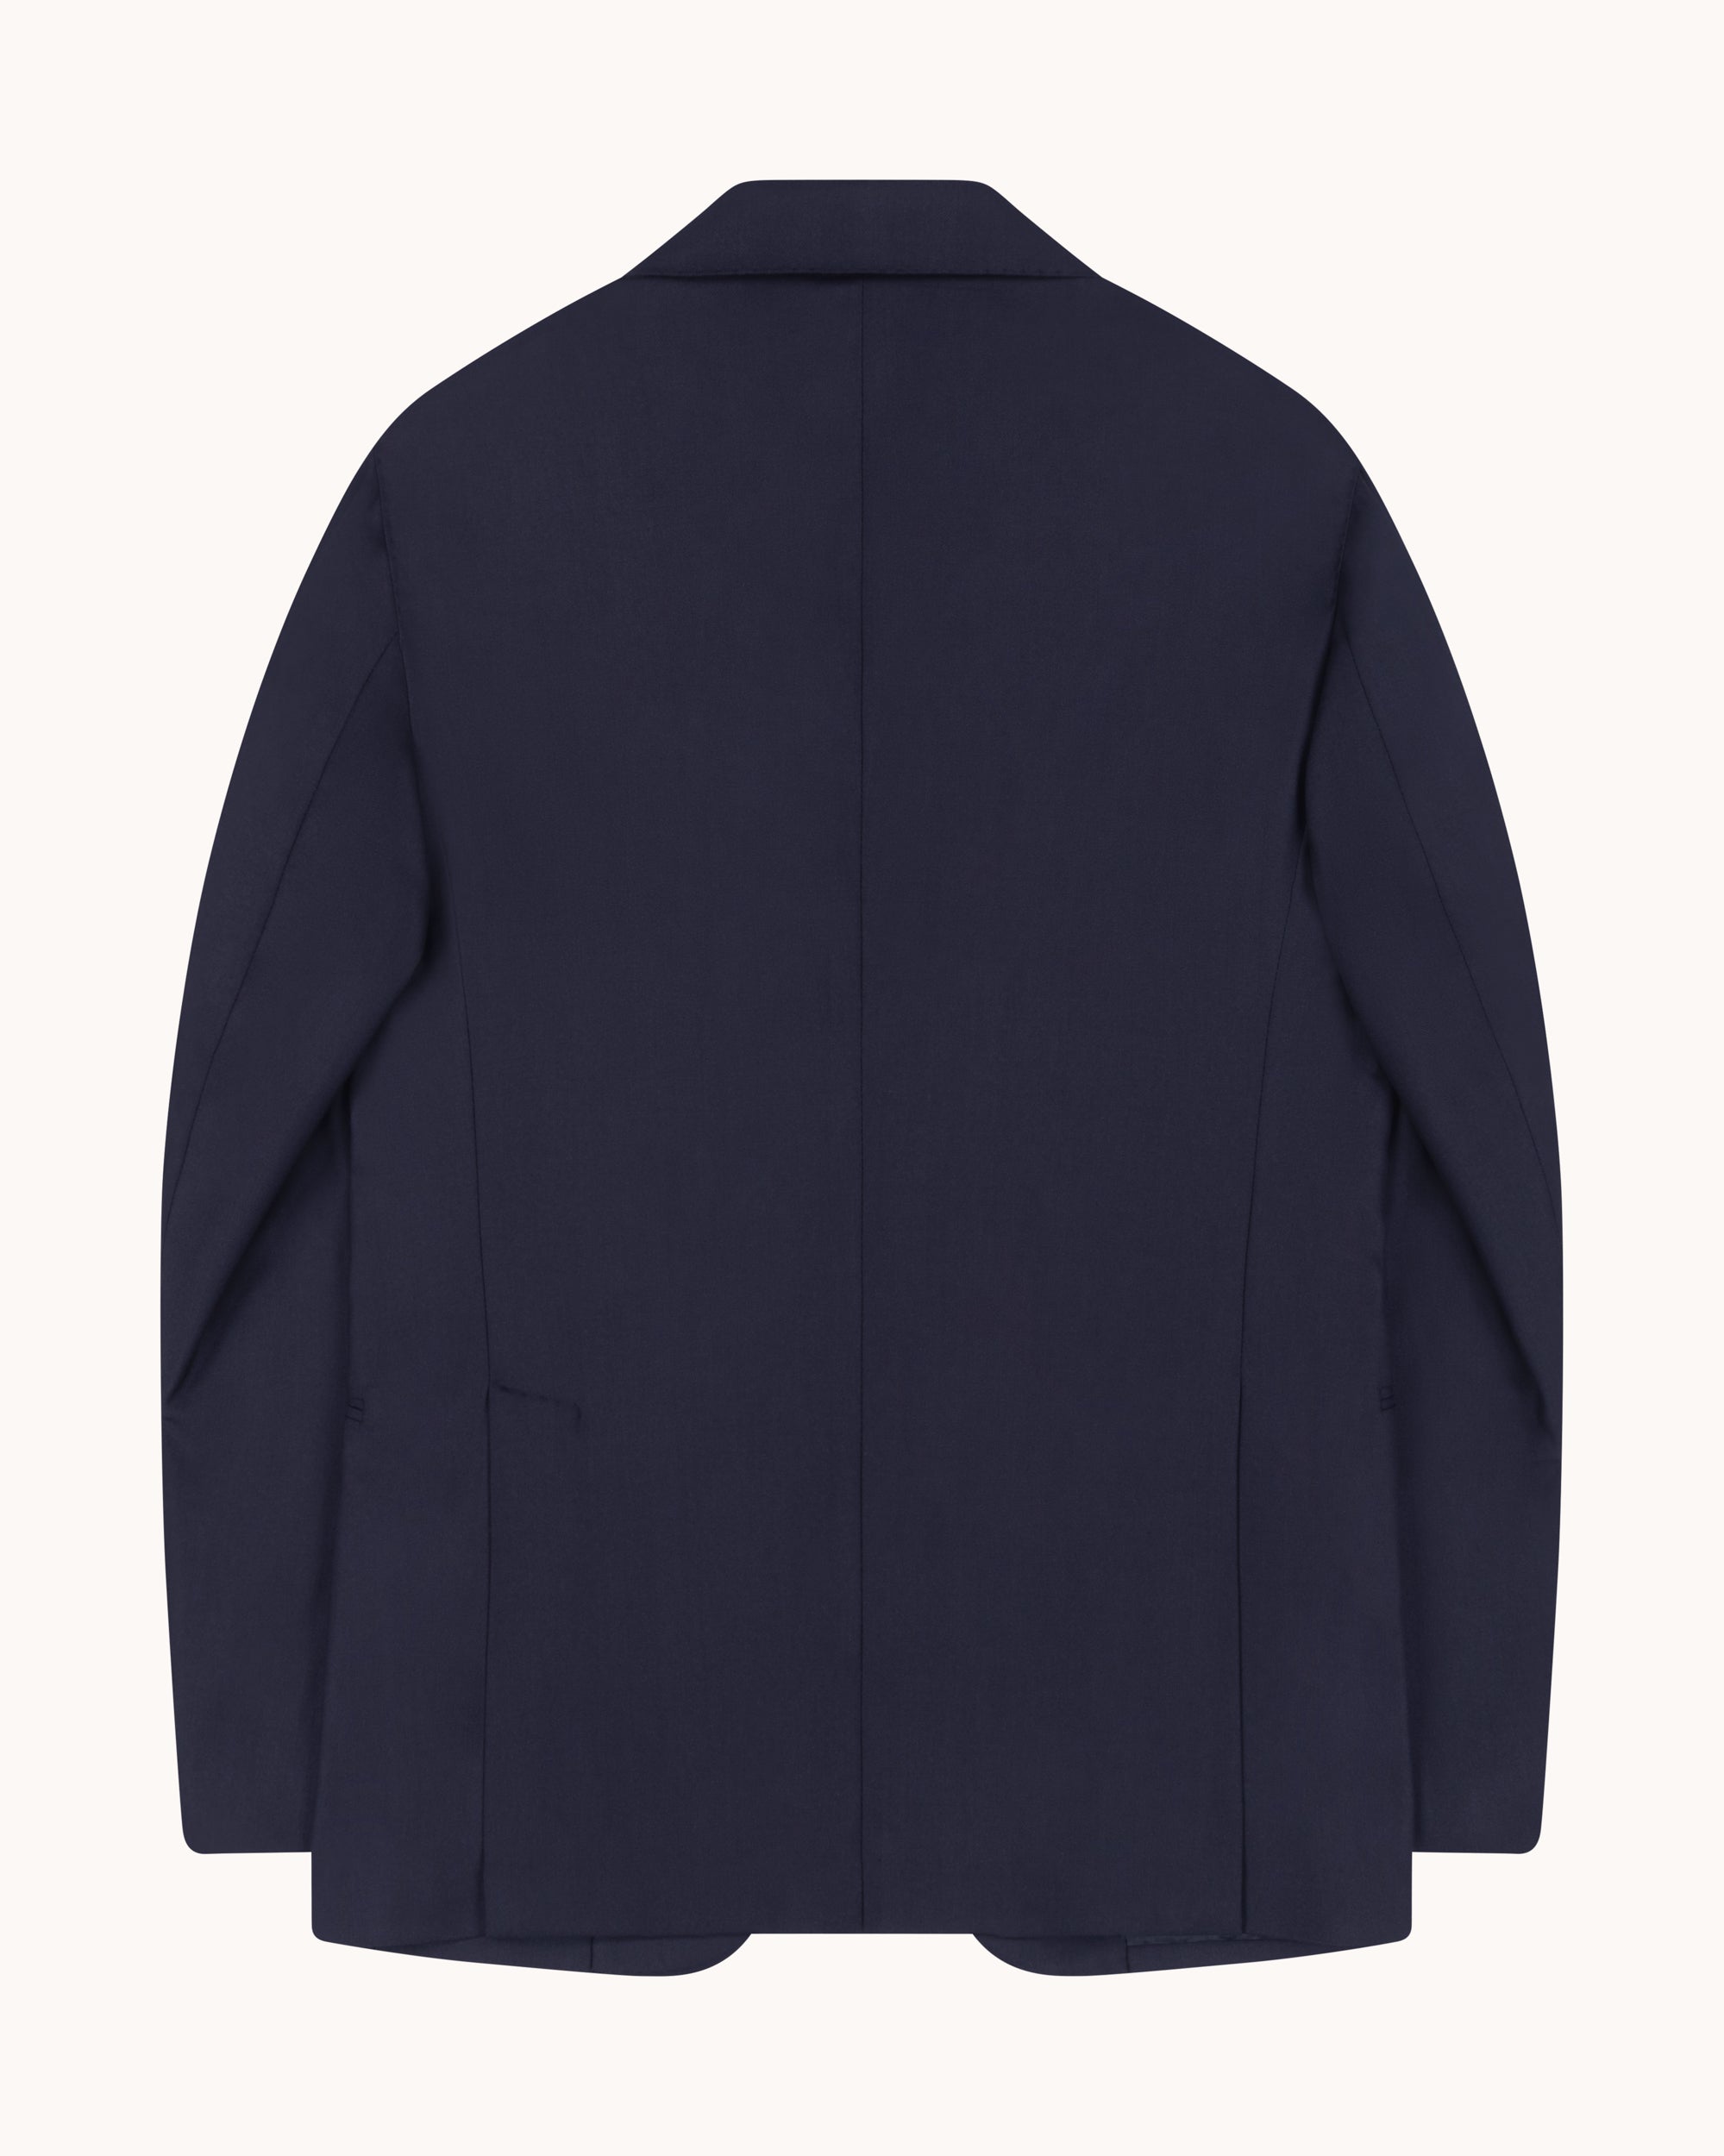 Sport Jacket - Navy Herringbone Wool